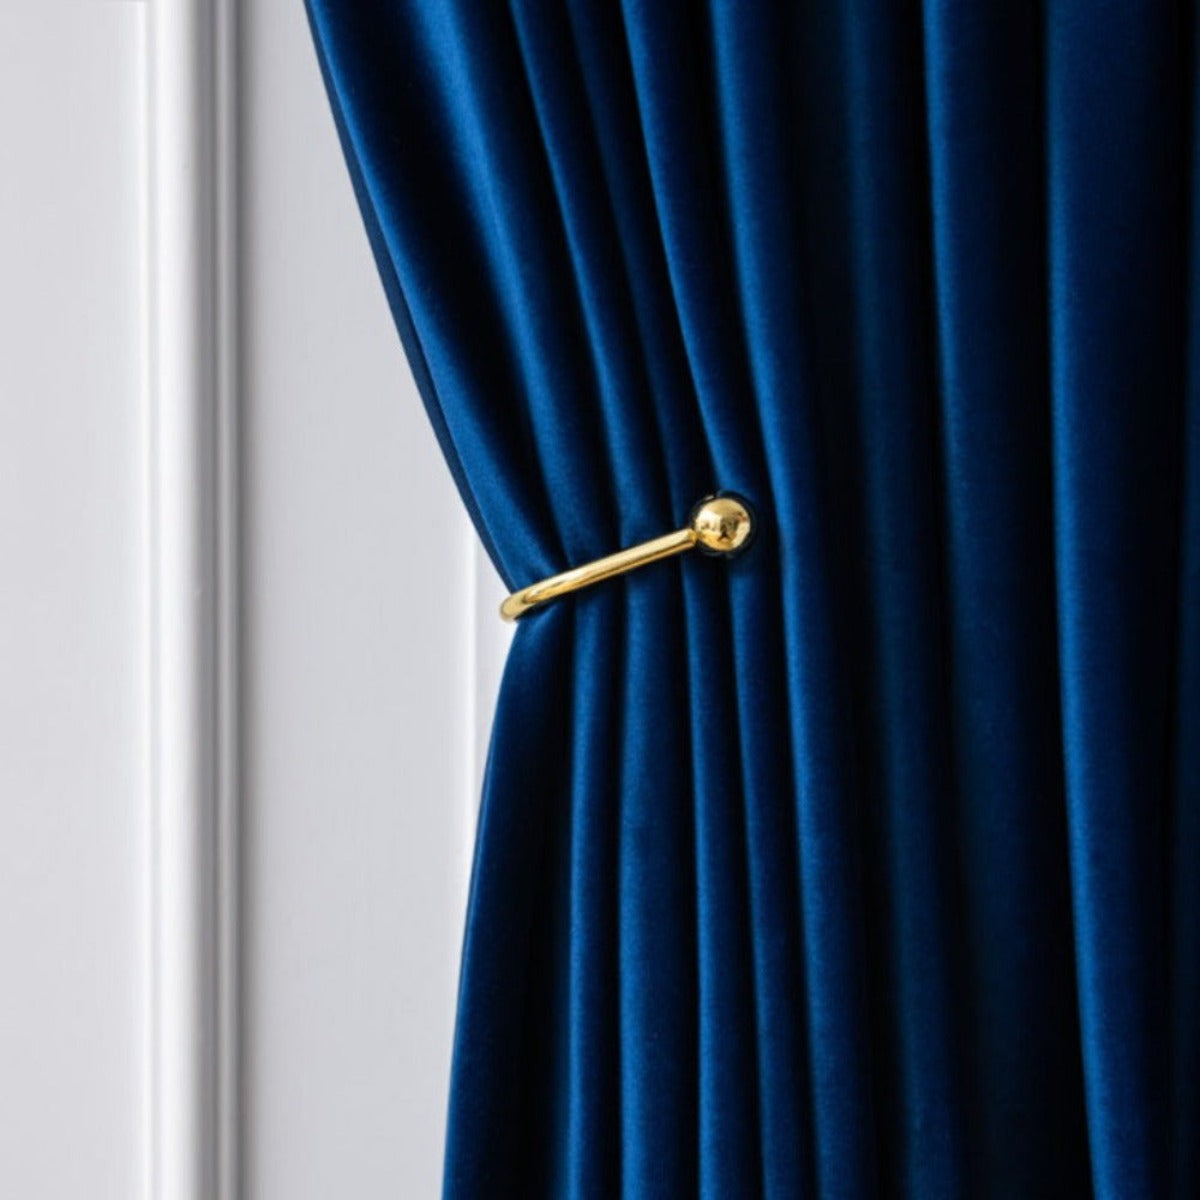 VELVETYWHISPER FLANNELLUXE BLUE Velvet Blackout Curtains - Home Curtains